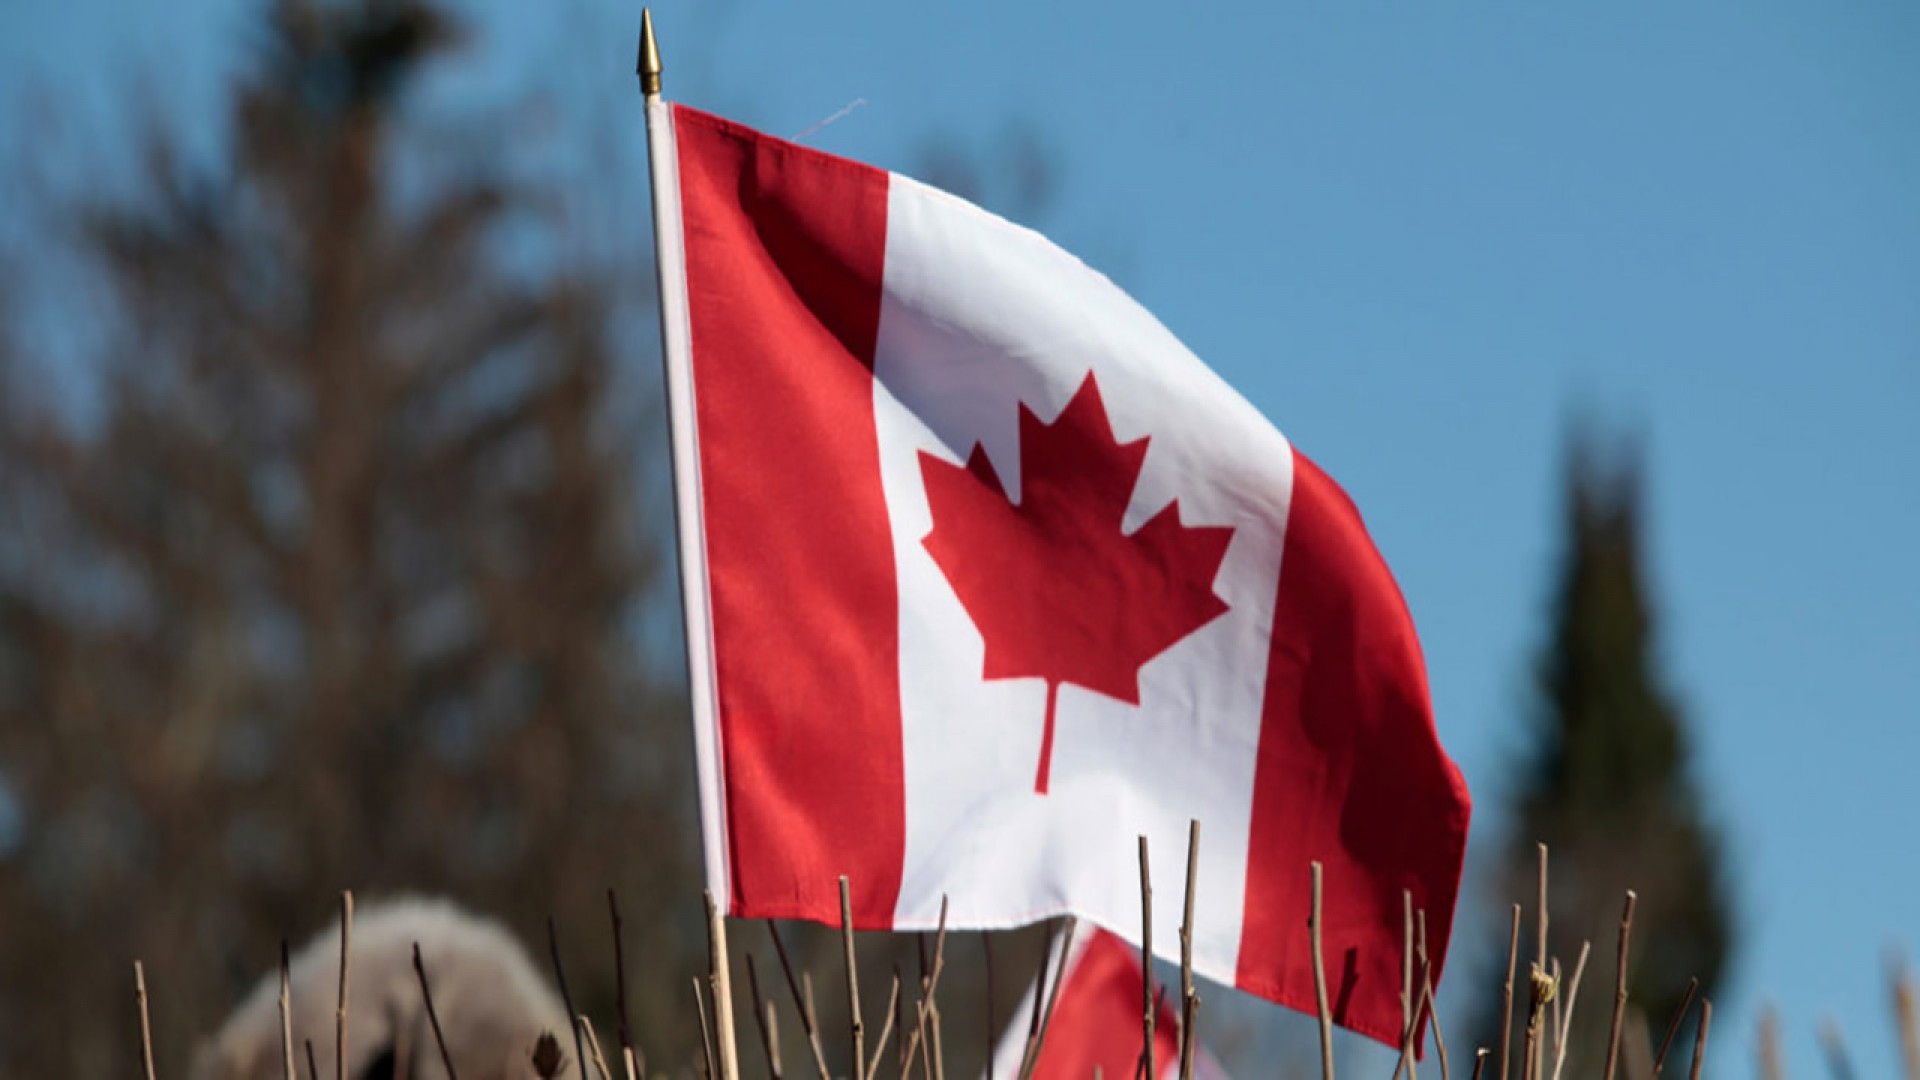 5 xu hướng văn hóa đang thịnh hành khi du học ở Canada